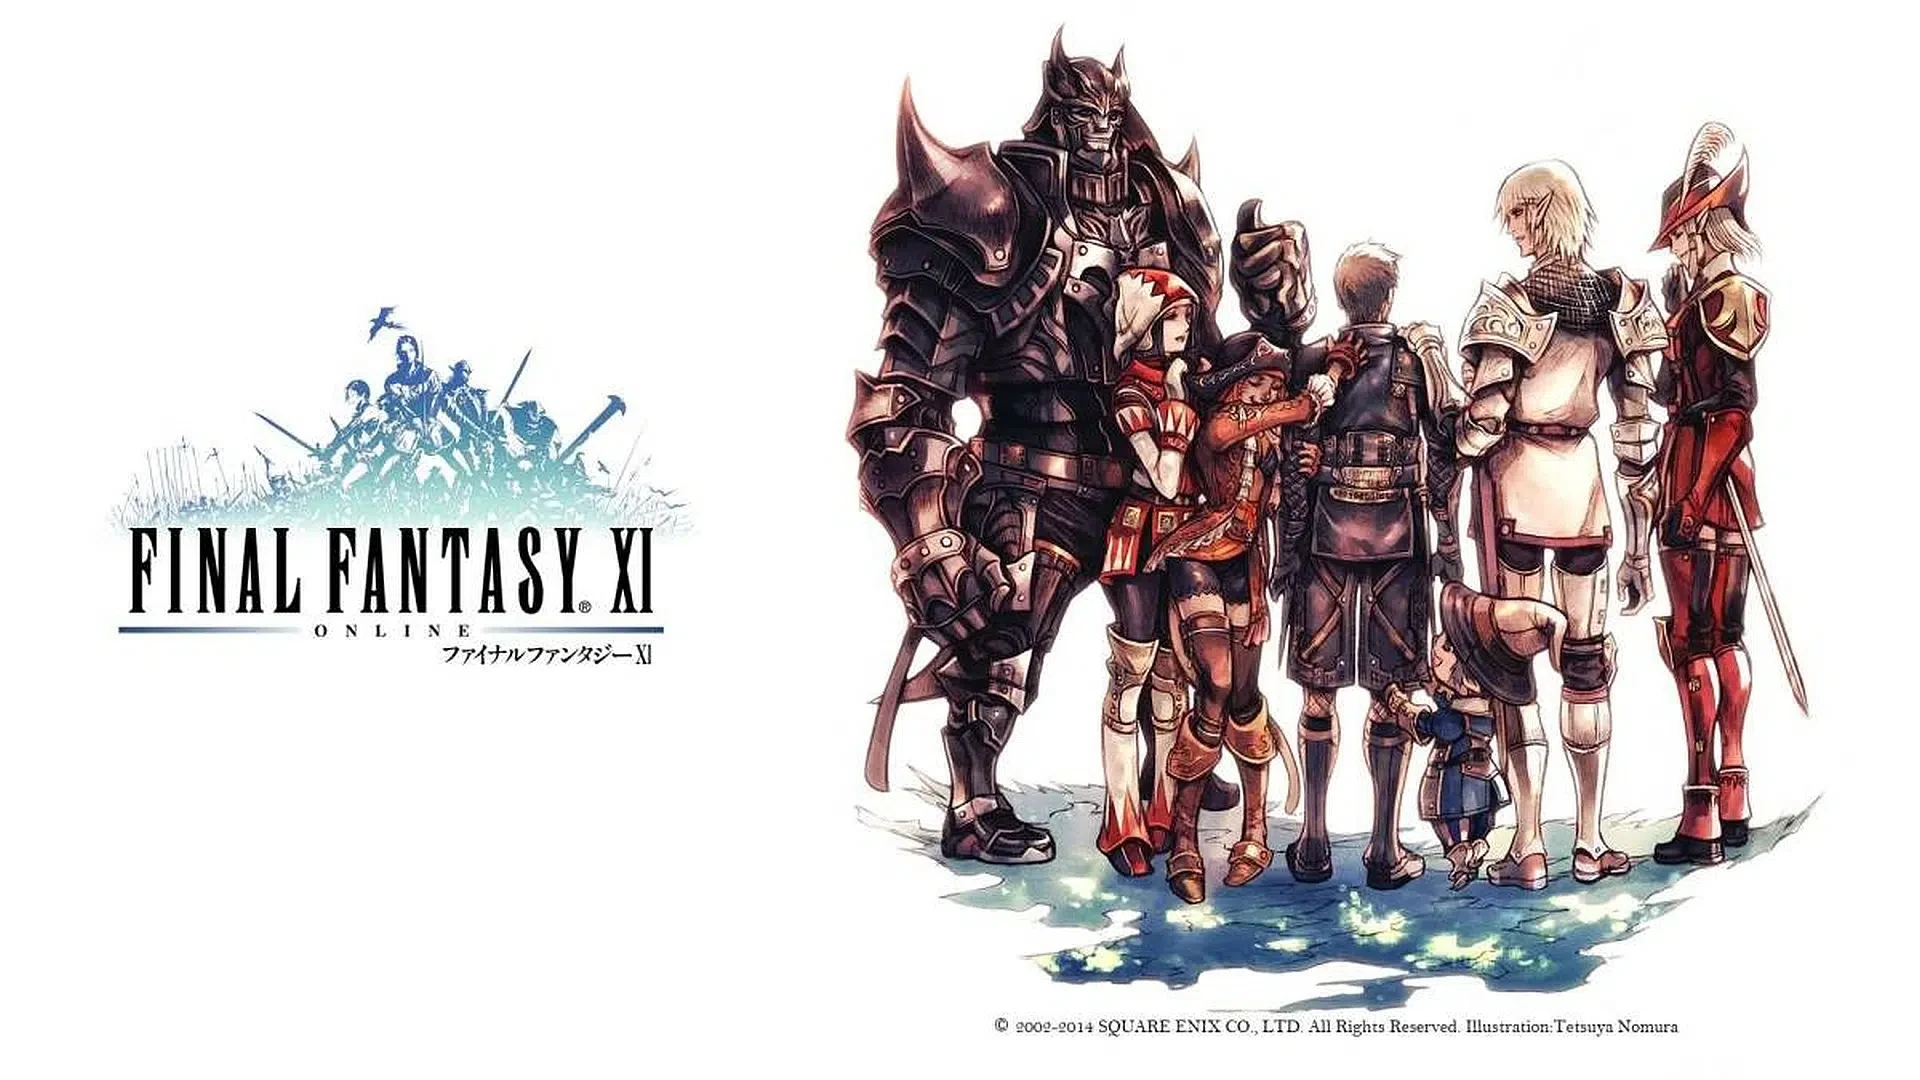 Co dalej z Final Fantasy XI? Zmiana producenta po 10 latach i zmniejszenie zespołu